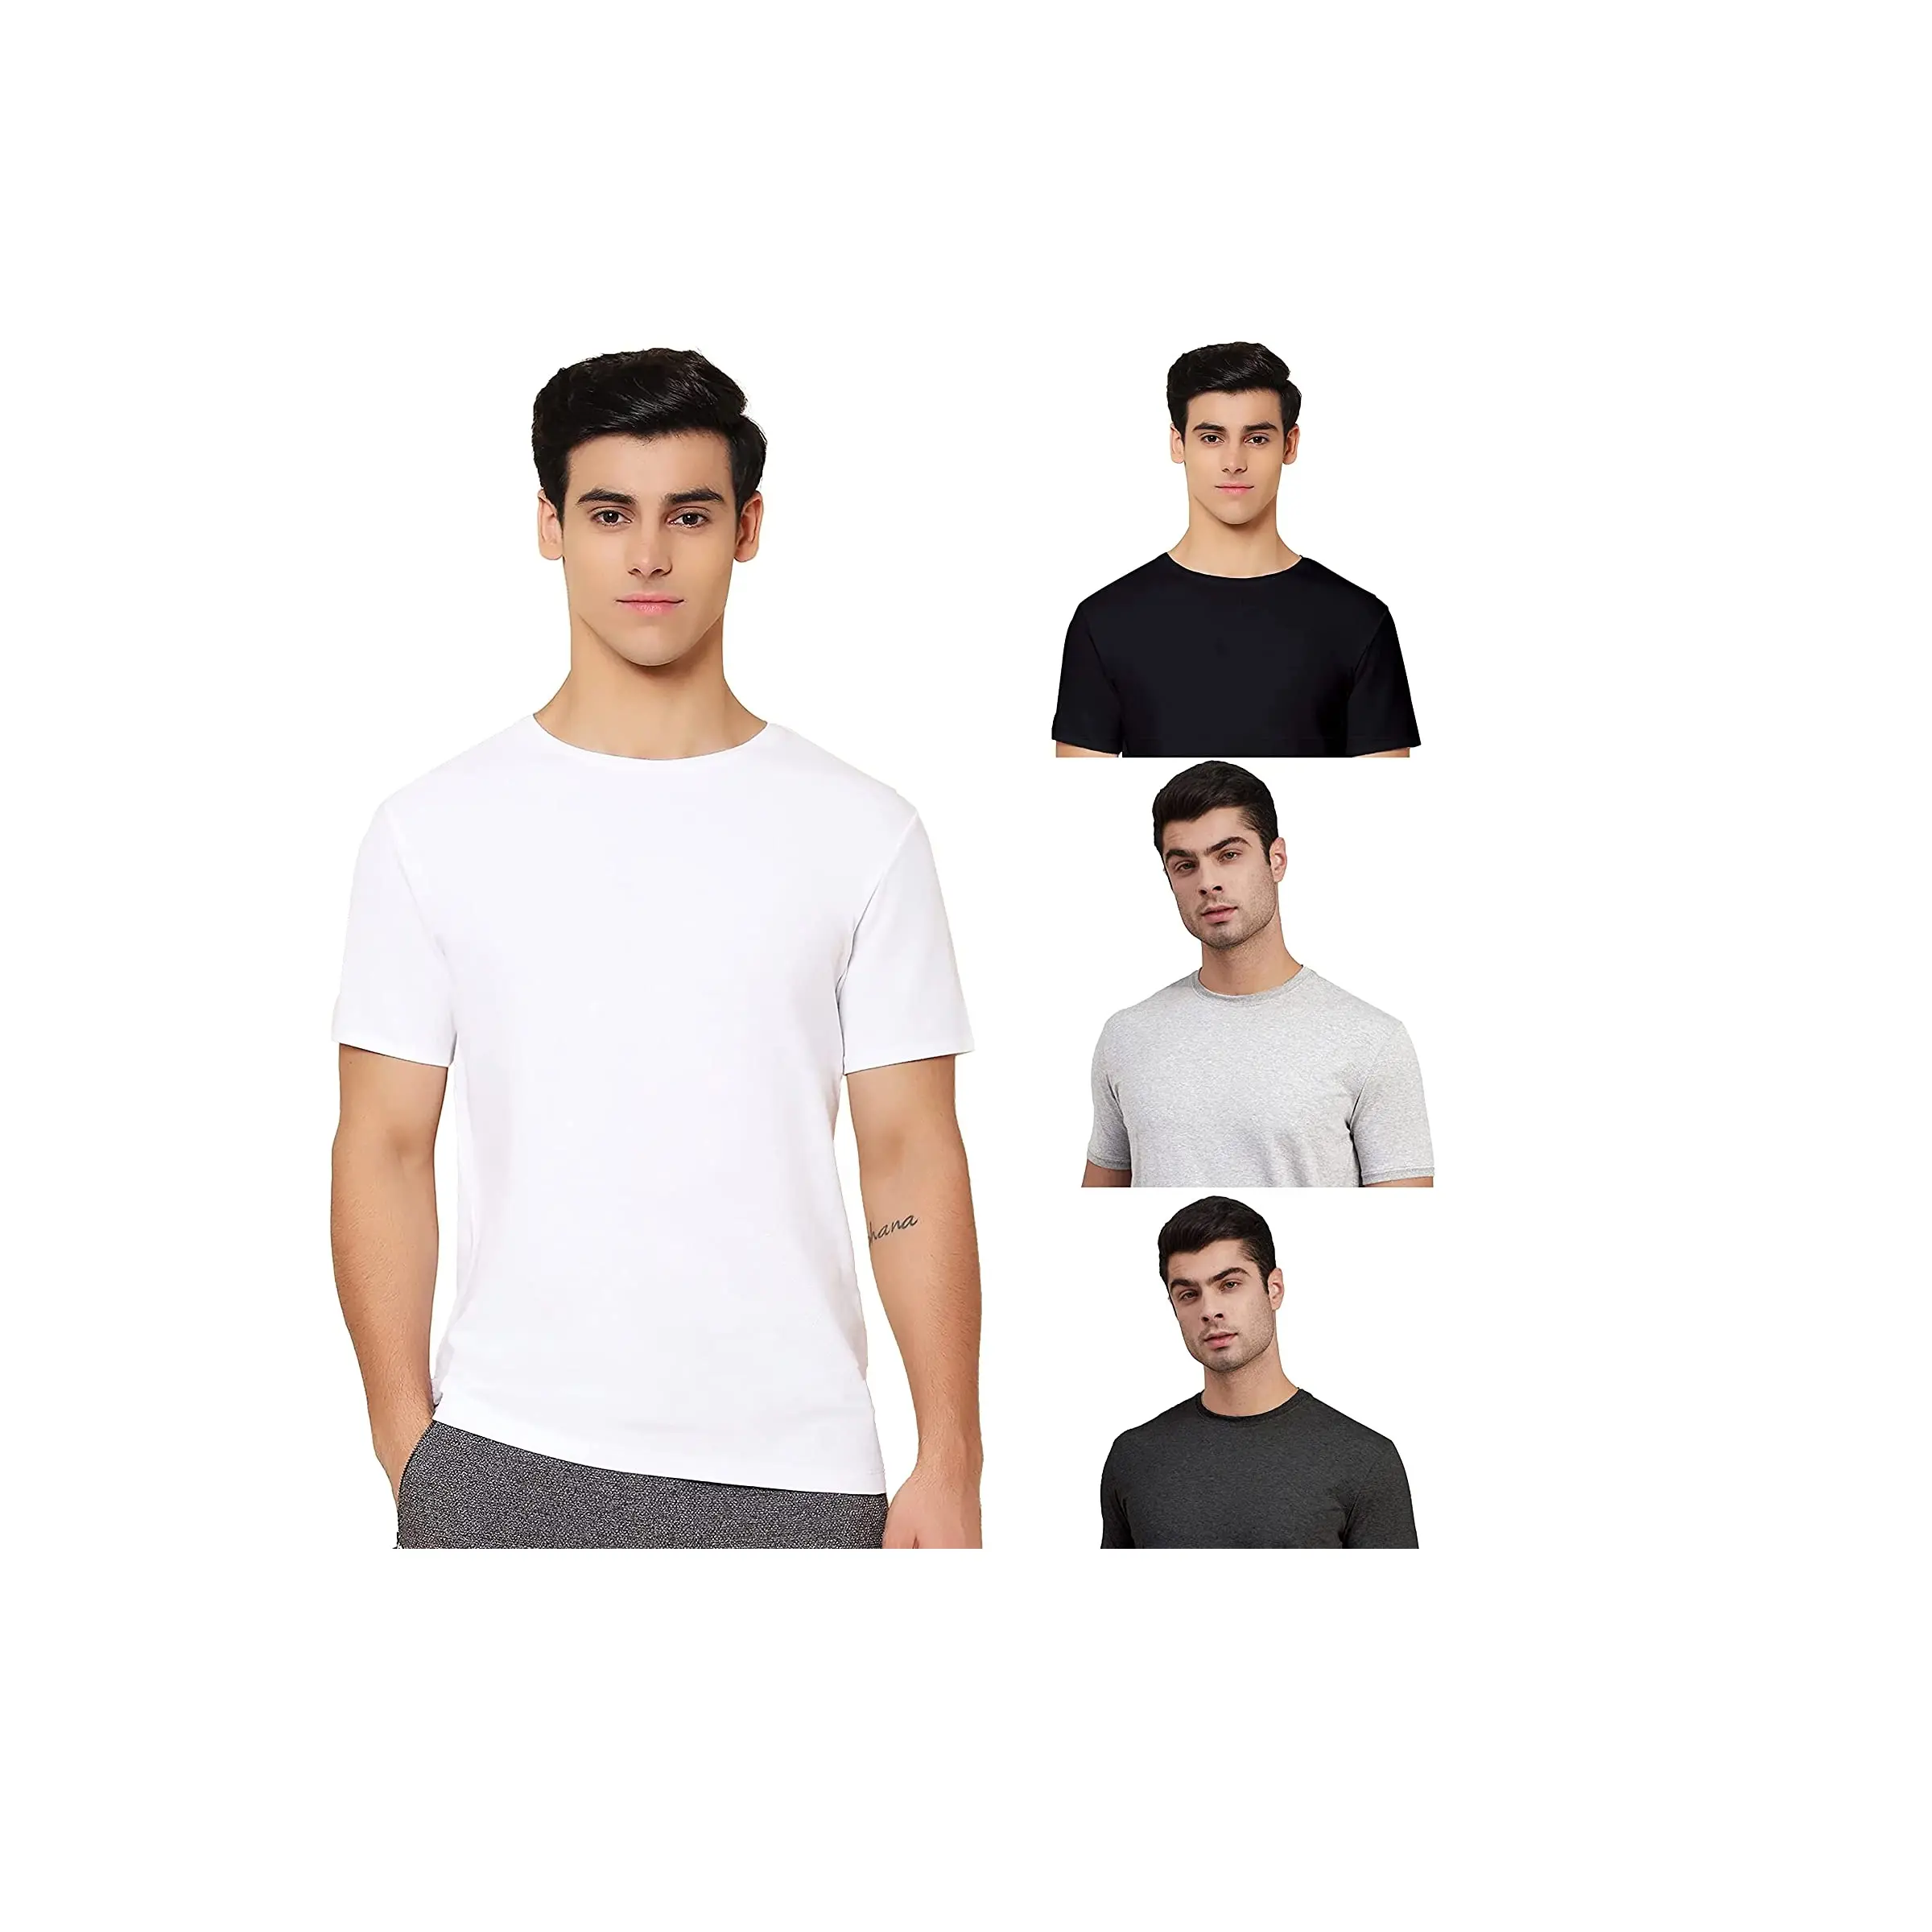 Оптовая продажа, OEM, печать логотипа на заказ, 100% хлопок, Мужская Простая белая футболка, индивидуальная пустая Мужская футболка, готовая индийская одежда